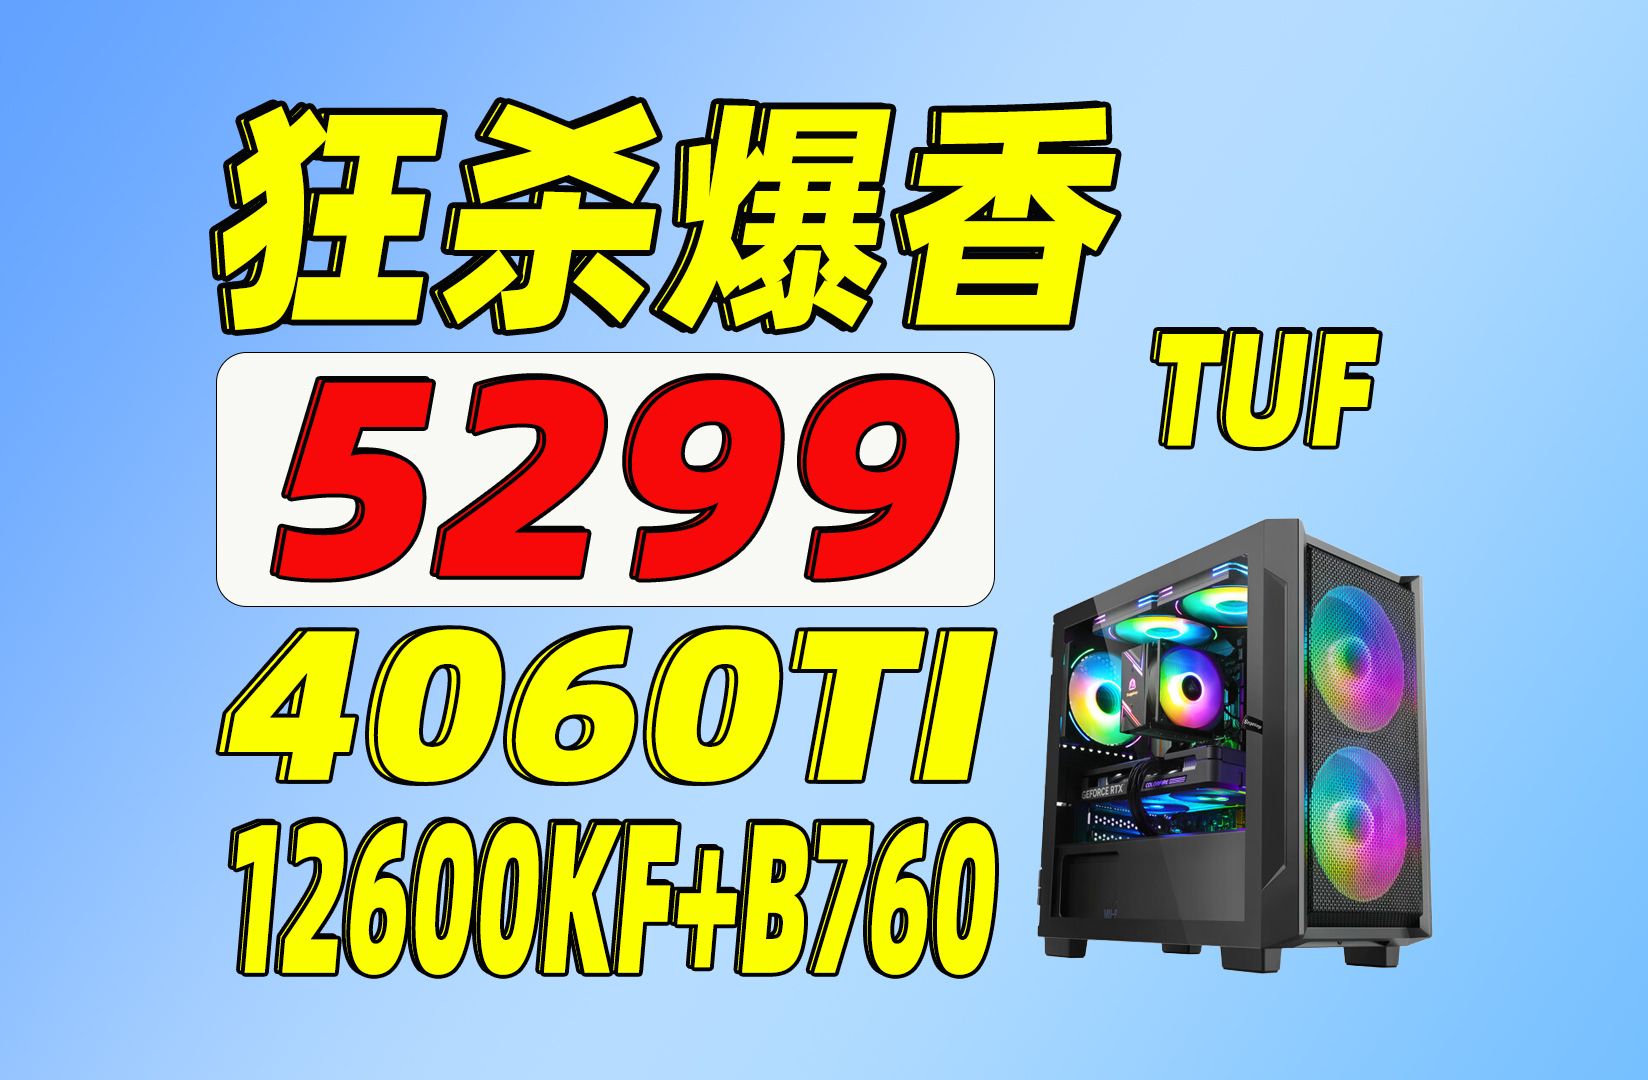 七彩虹 GT710 显卡能耗问题探讨及基本介绍  第3张